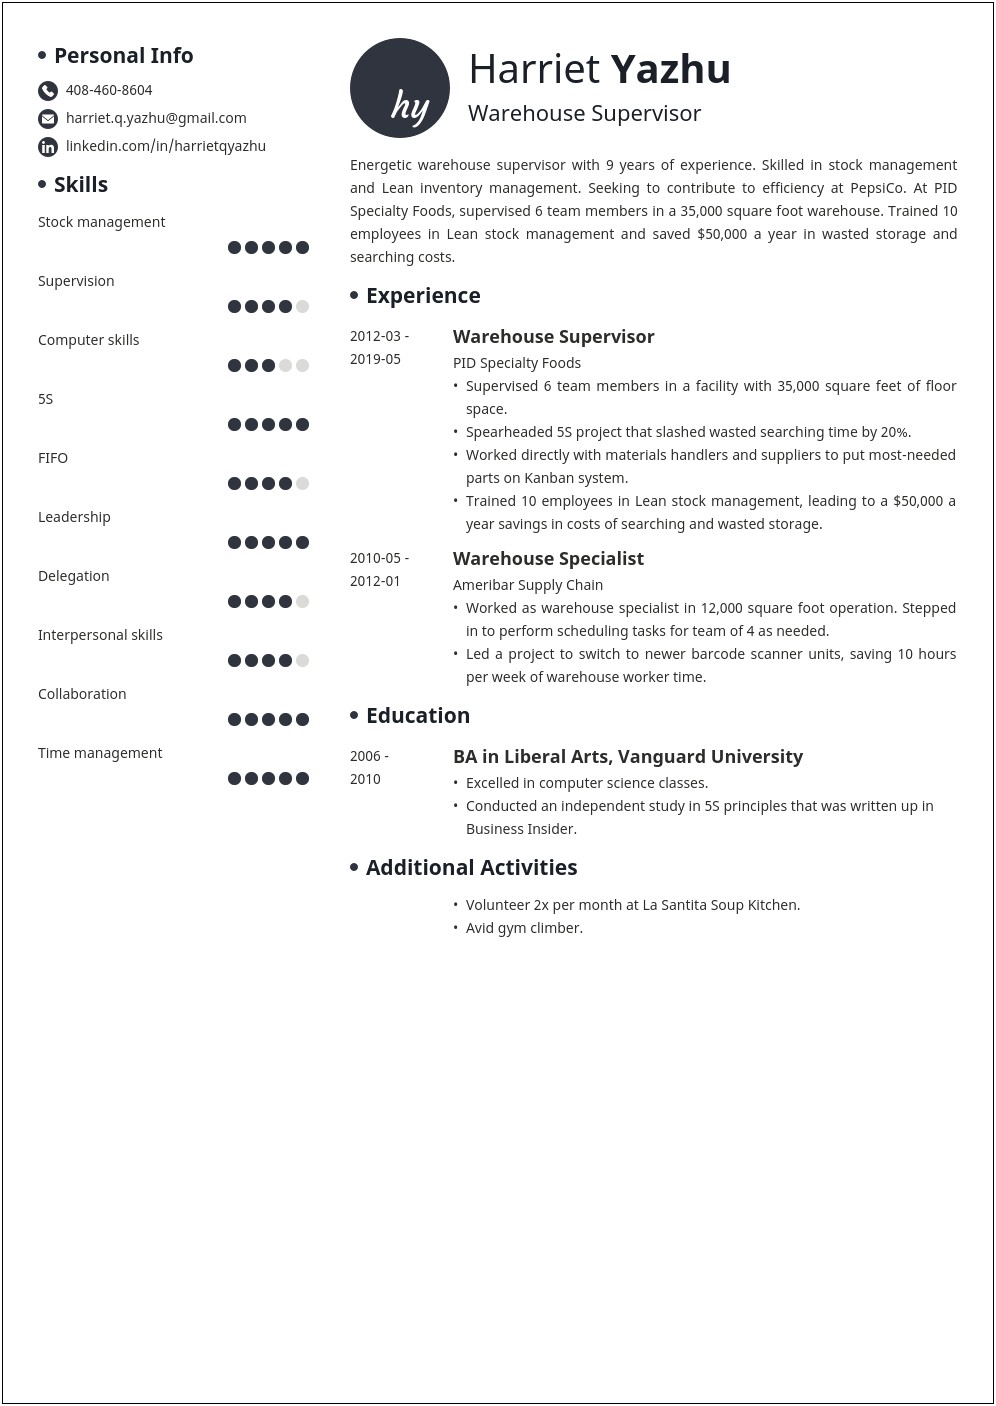 Gas Station Manager Job Description Resume